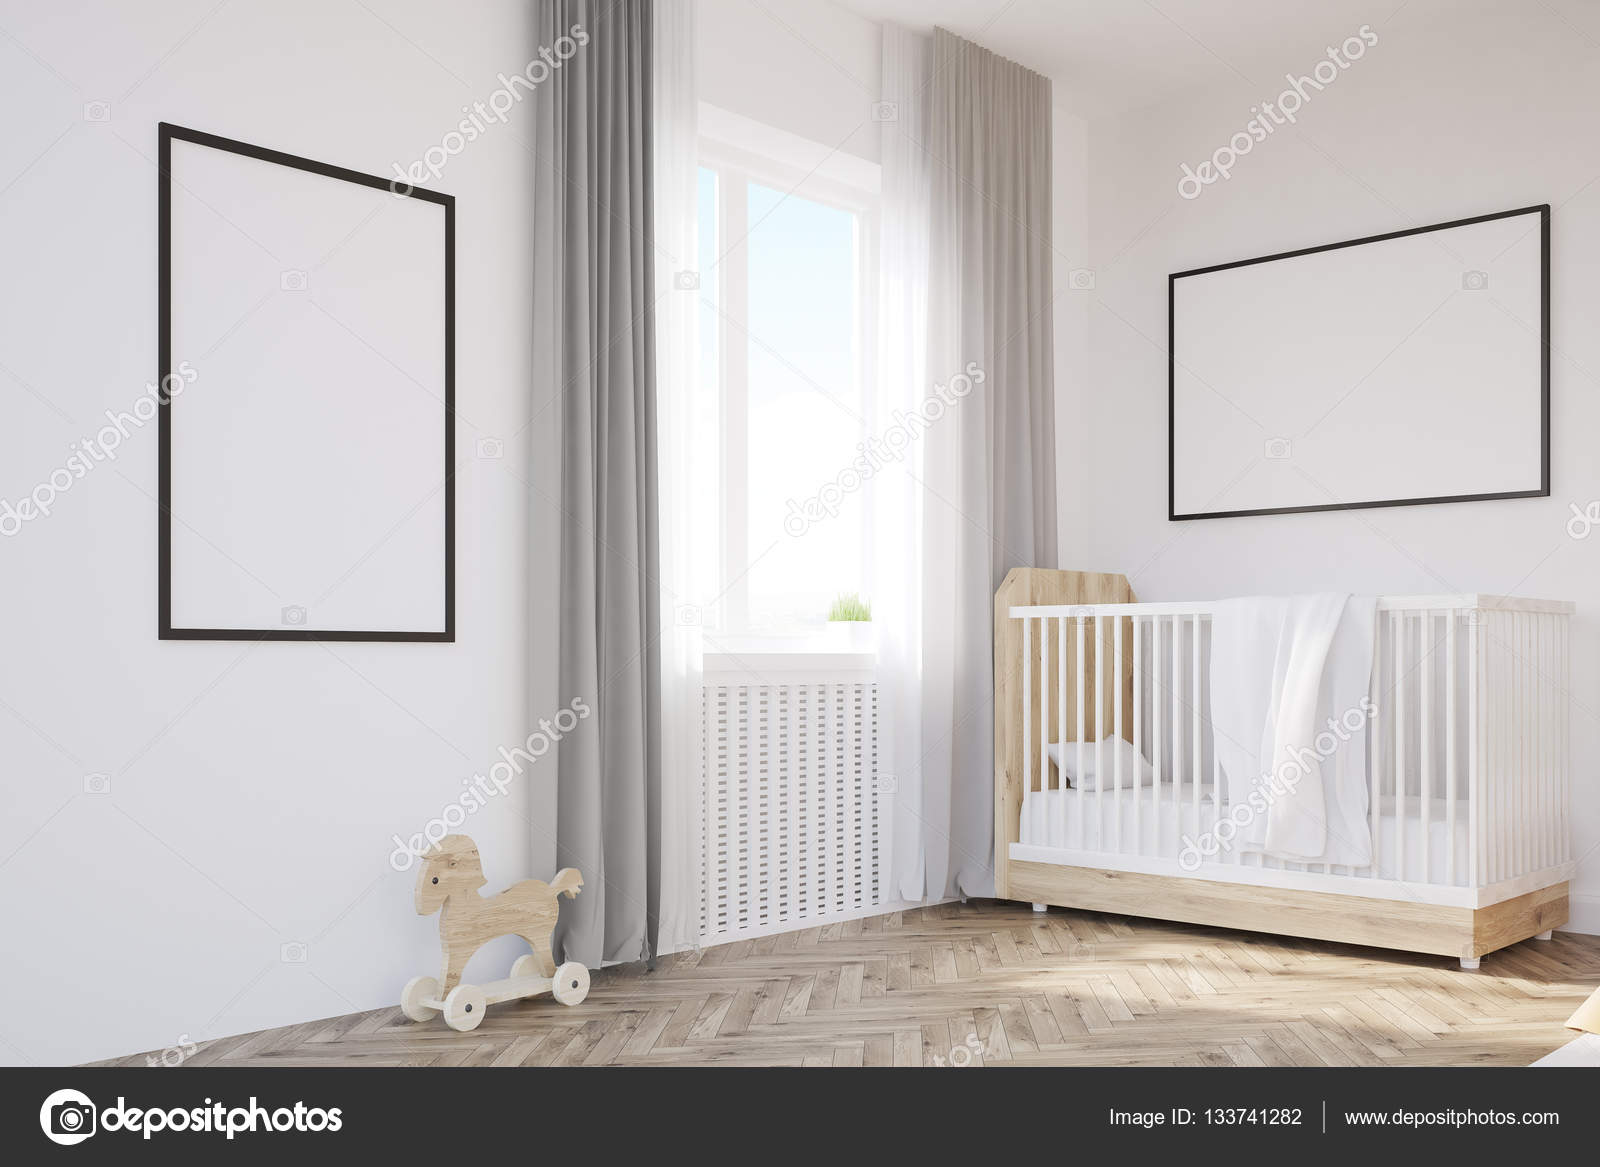 crib in corner of room